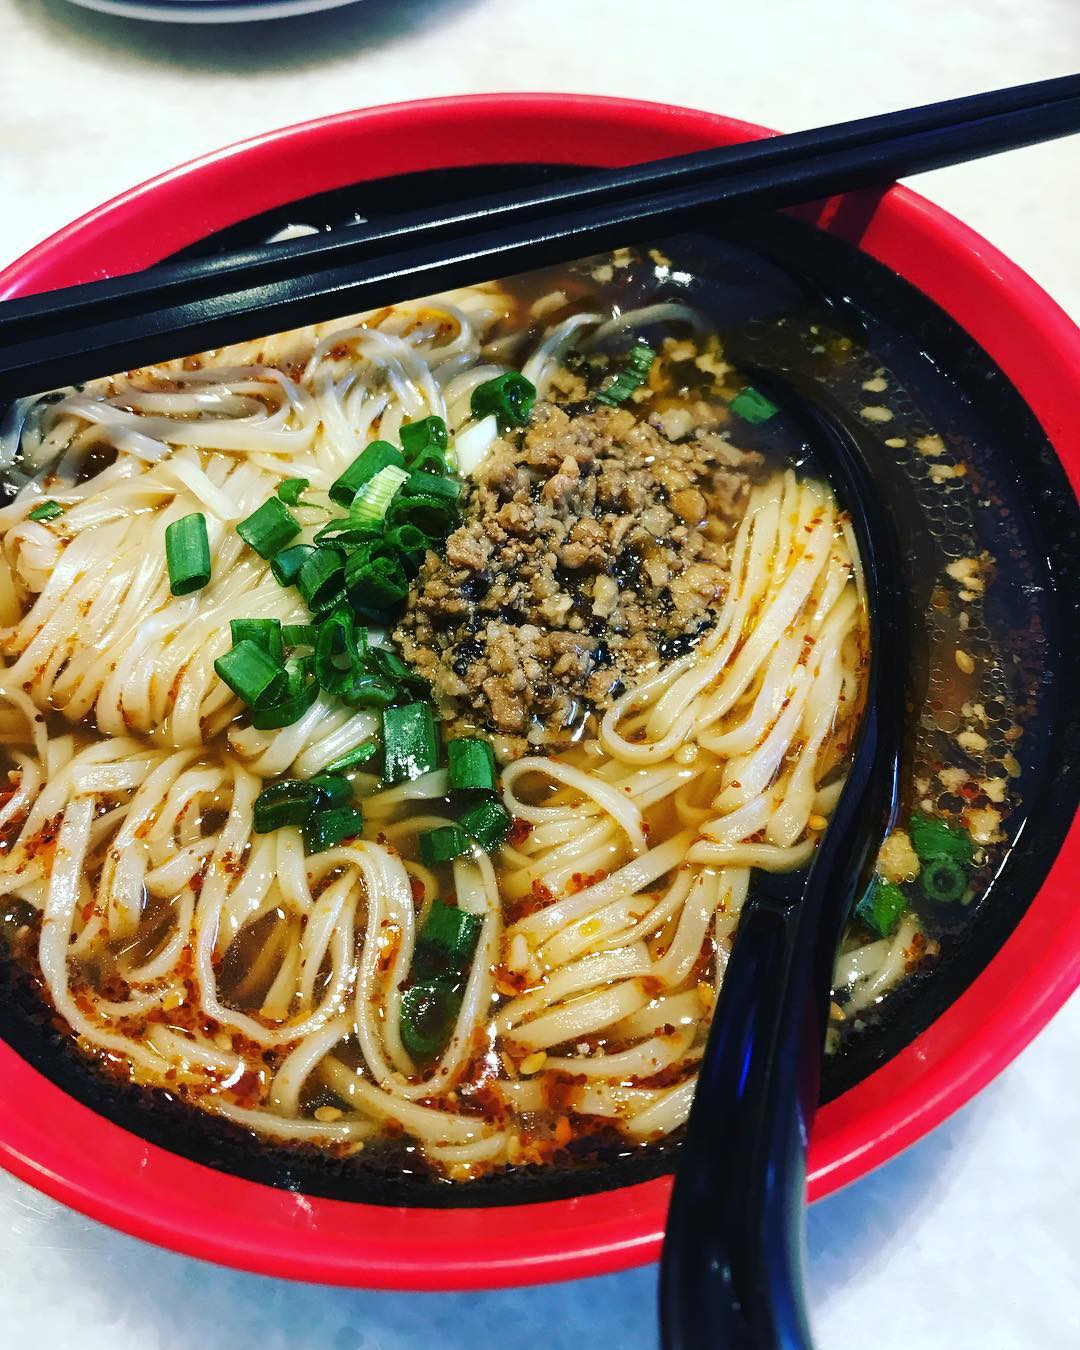 Ipoh dimsum - soon yuen knife cut noodles